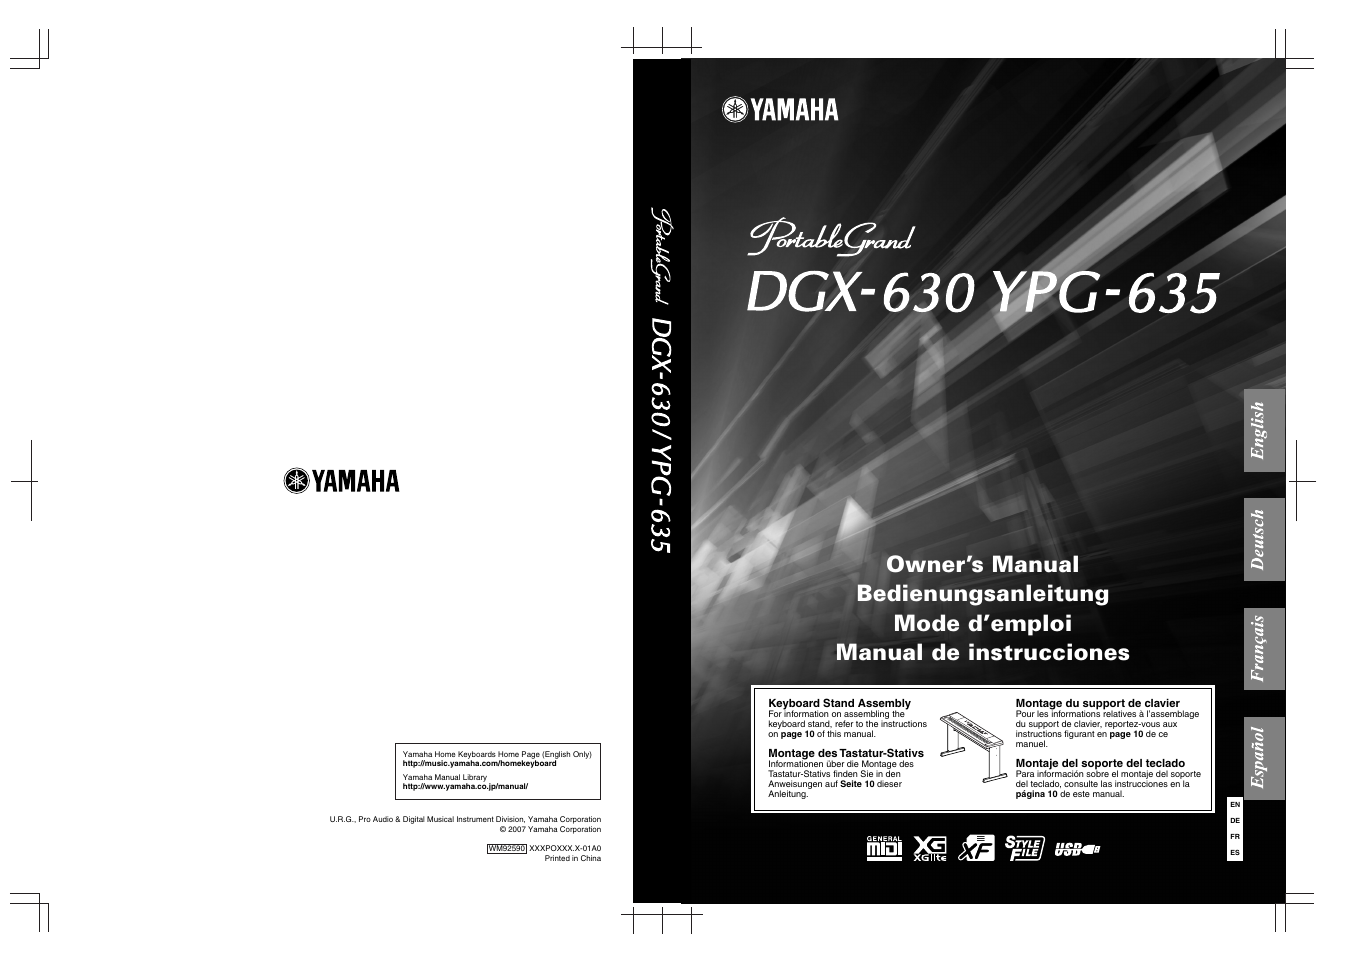 Yamaha DGX-630 Benutzerhandbuch | Seite 160 / 160